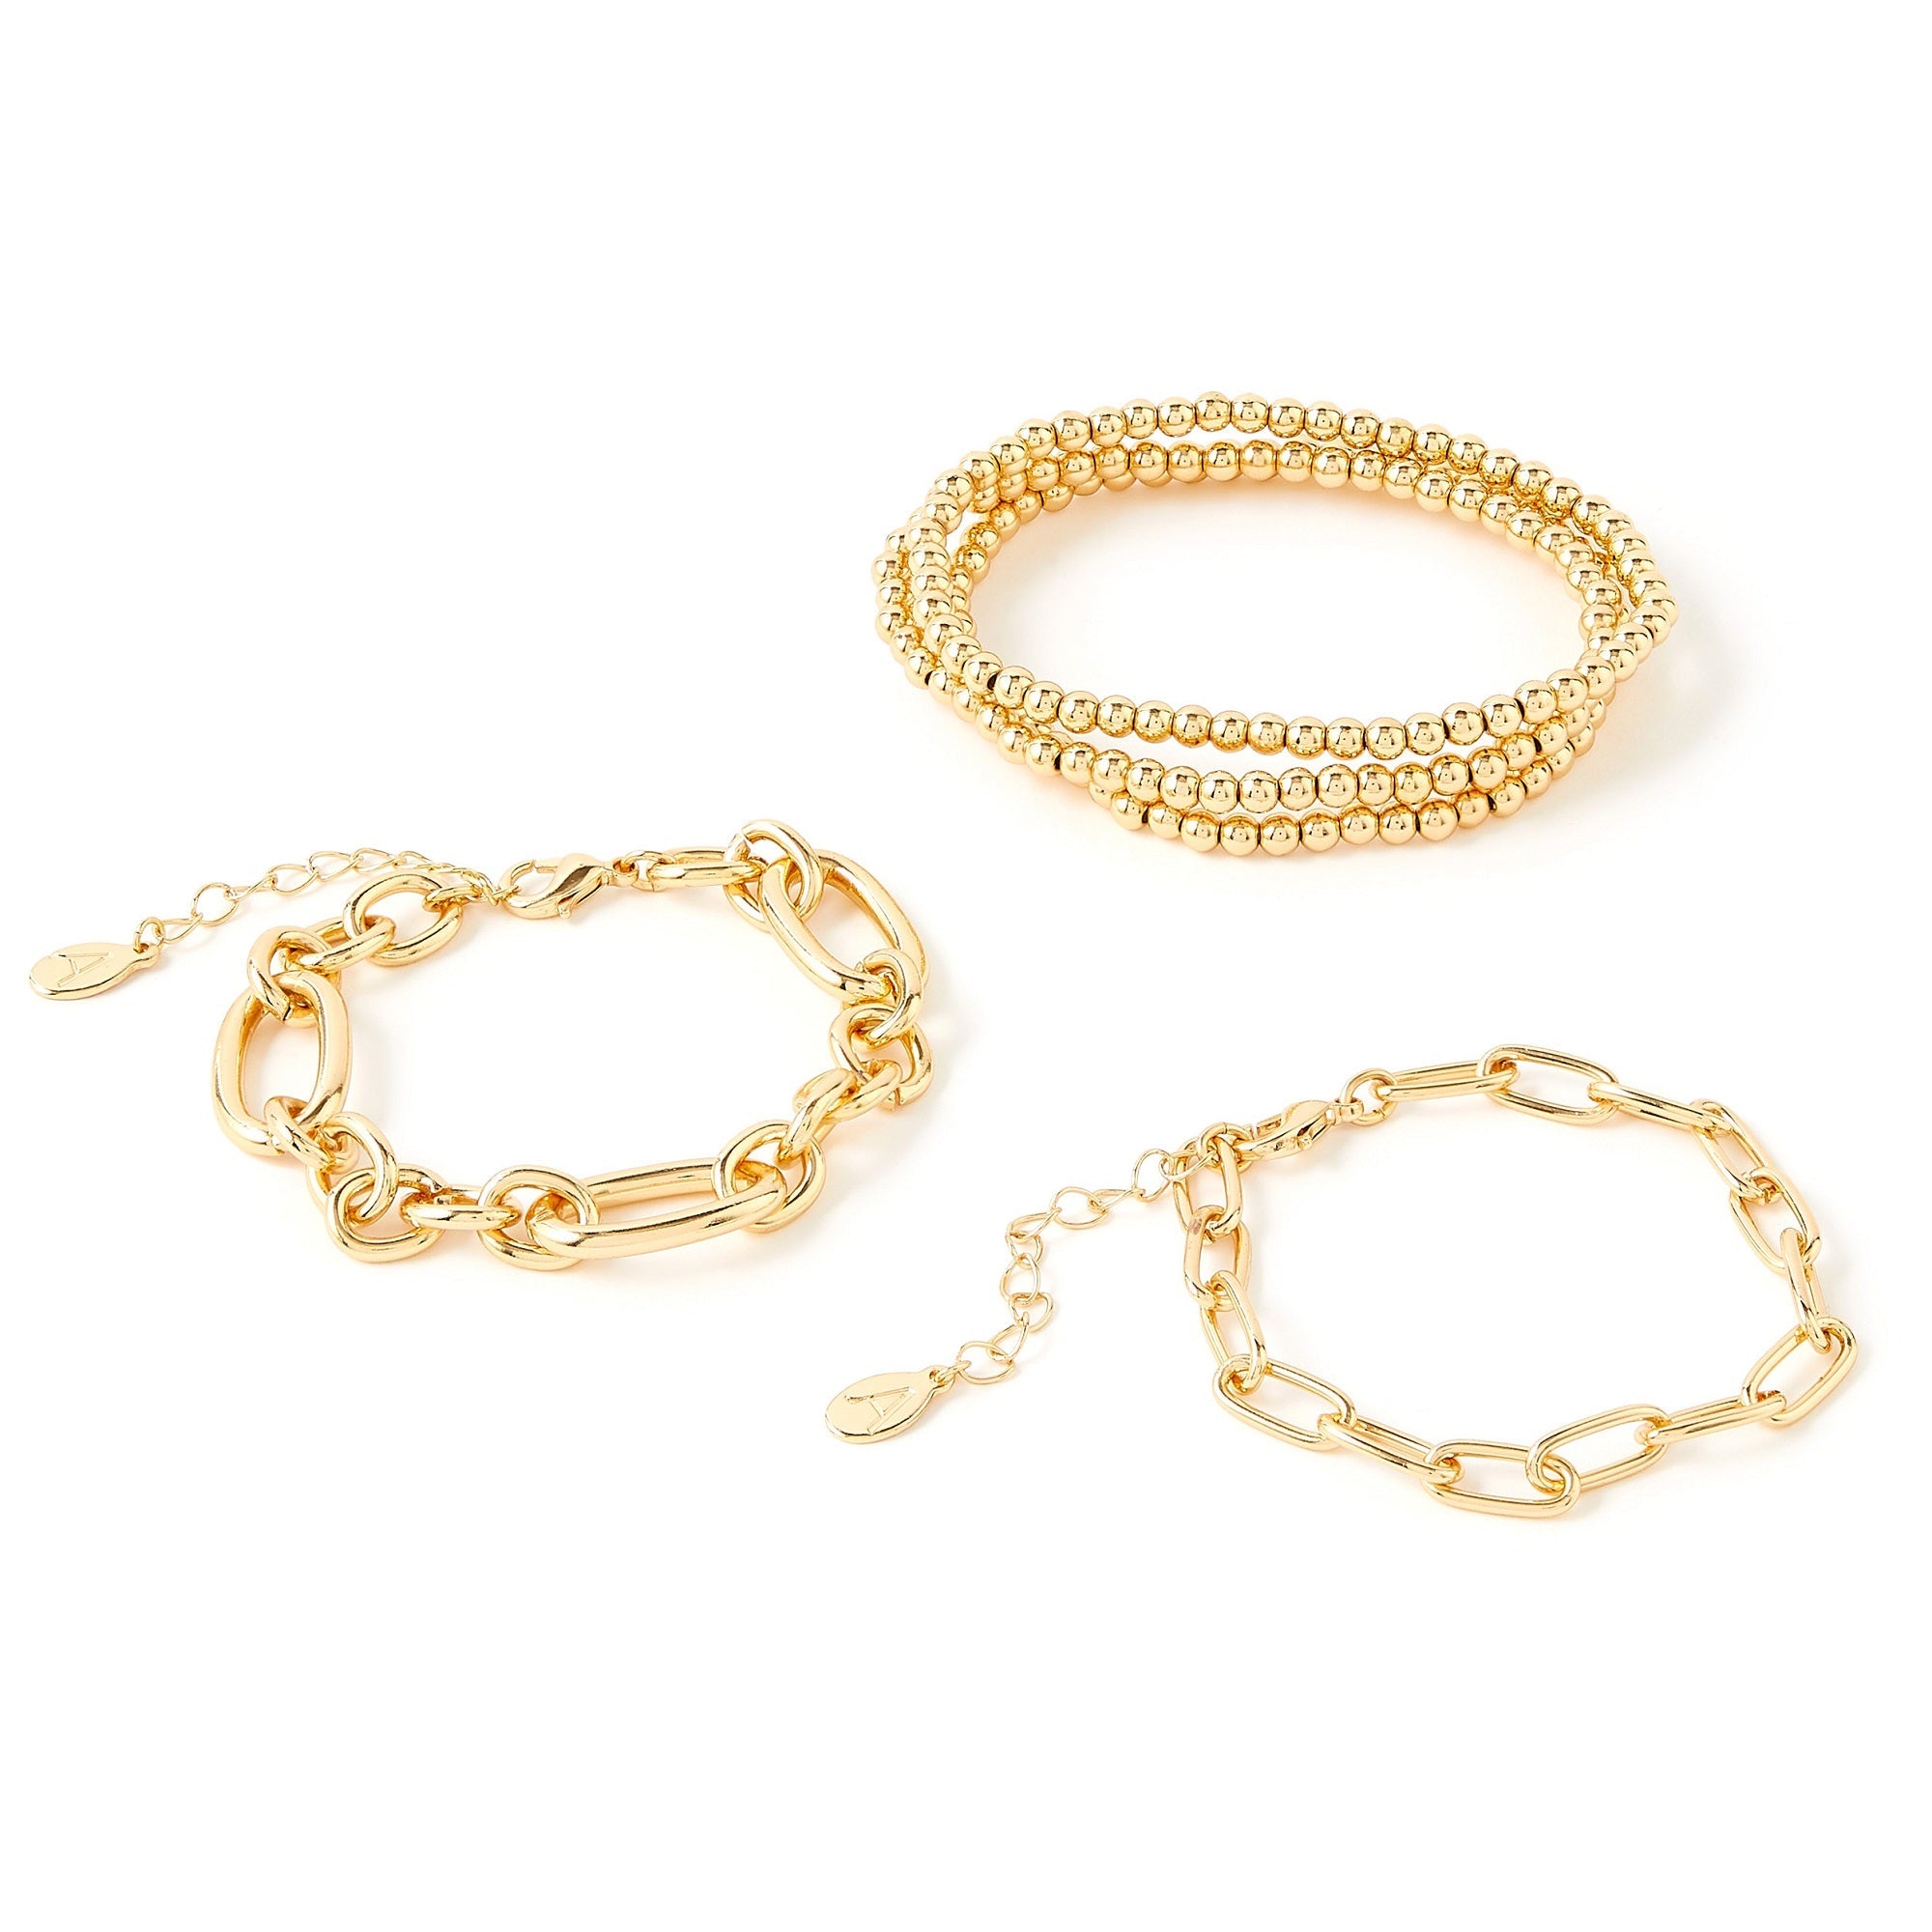 Buy 200+ Women's Bracelets Online | BlueStone.com - India's #1 Online  Jewellery Brand